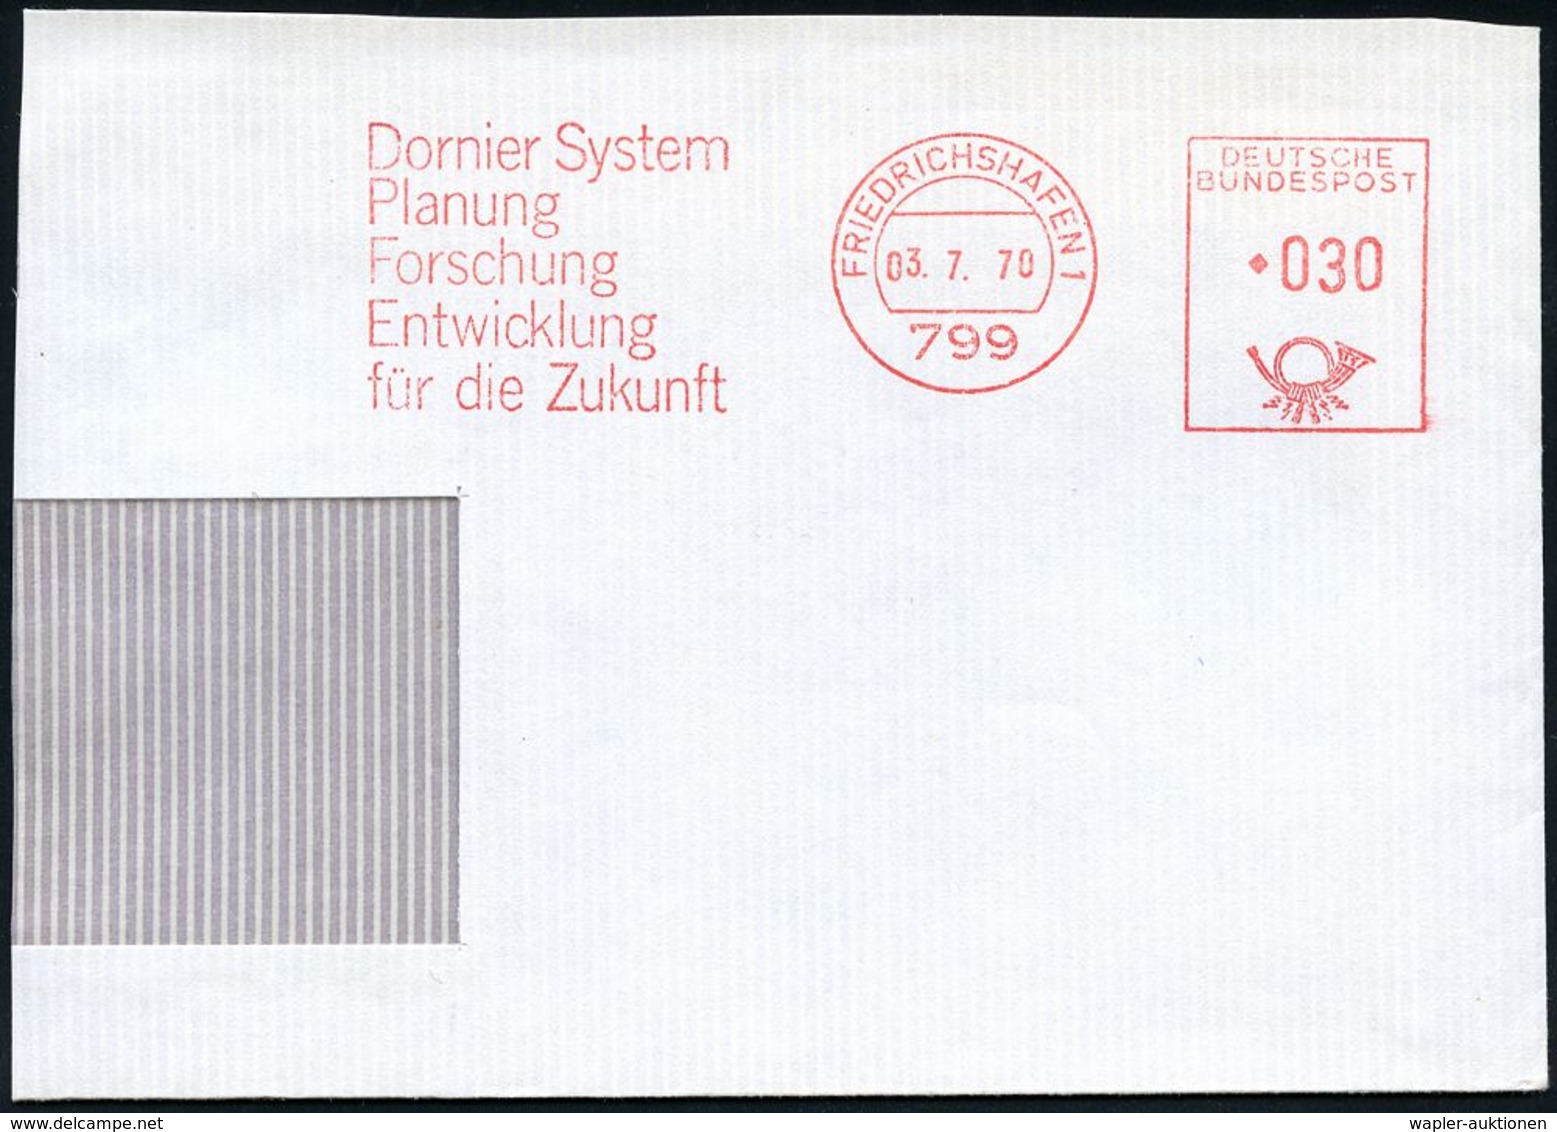 FLUGZEUGINDUSTRIE & -TYPEN : 799 #bzw.# 88045 FRIEDRICHSHAFEN 1/ Dornier System.. #bzw.# Dornier GmbH 1970/95 2 Verschie - Flugzeuge